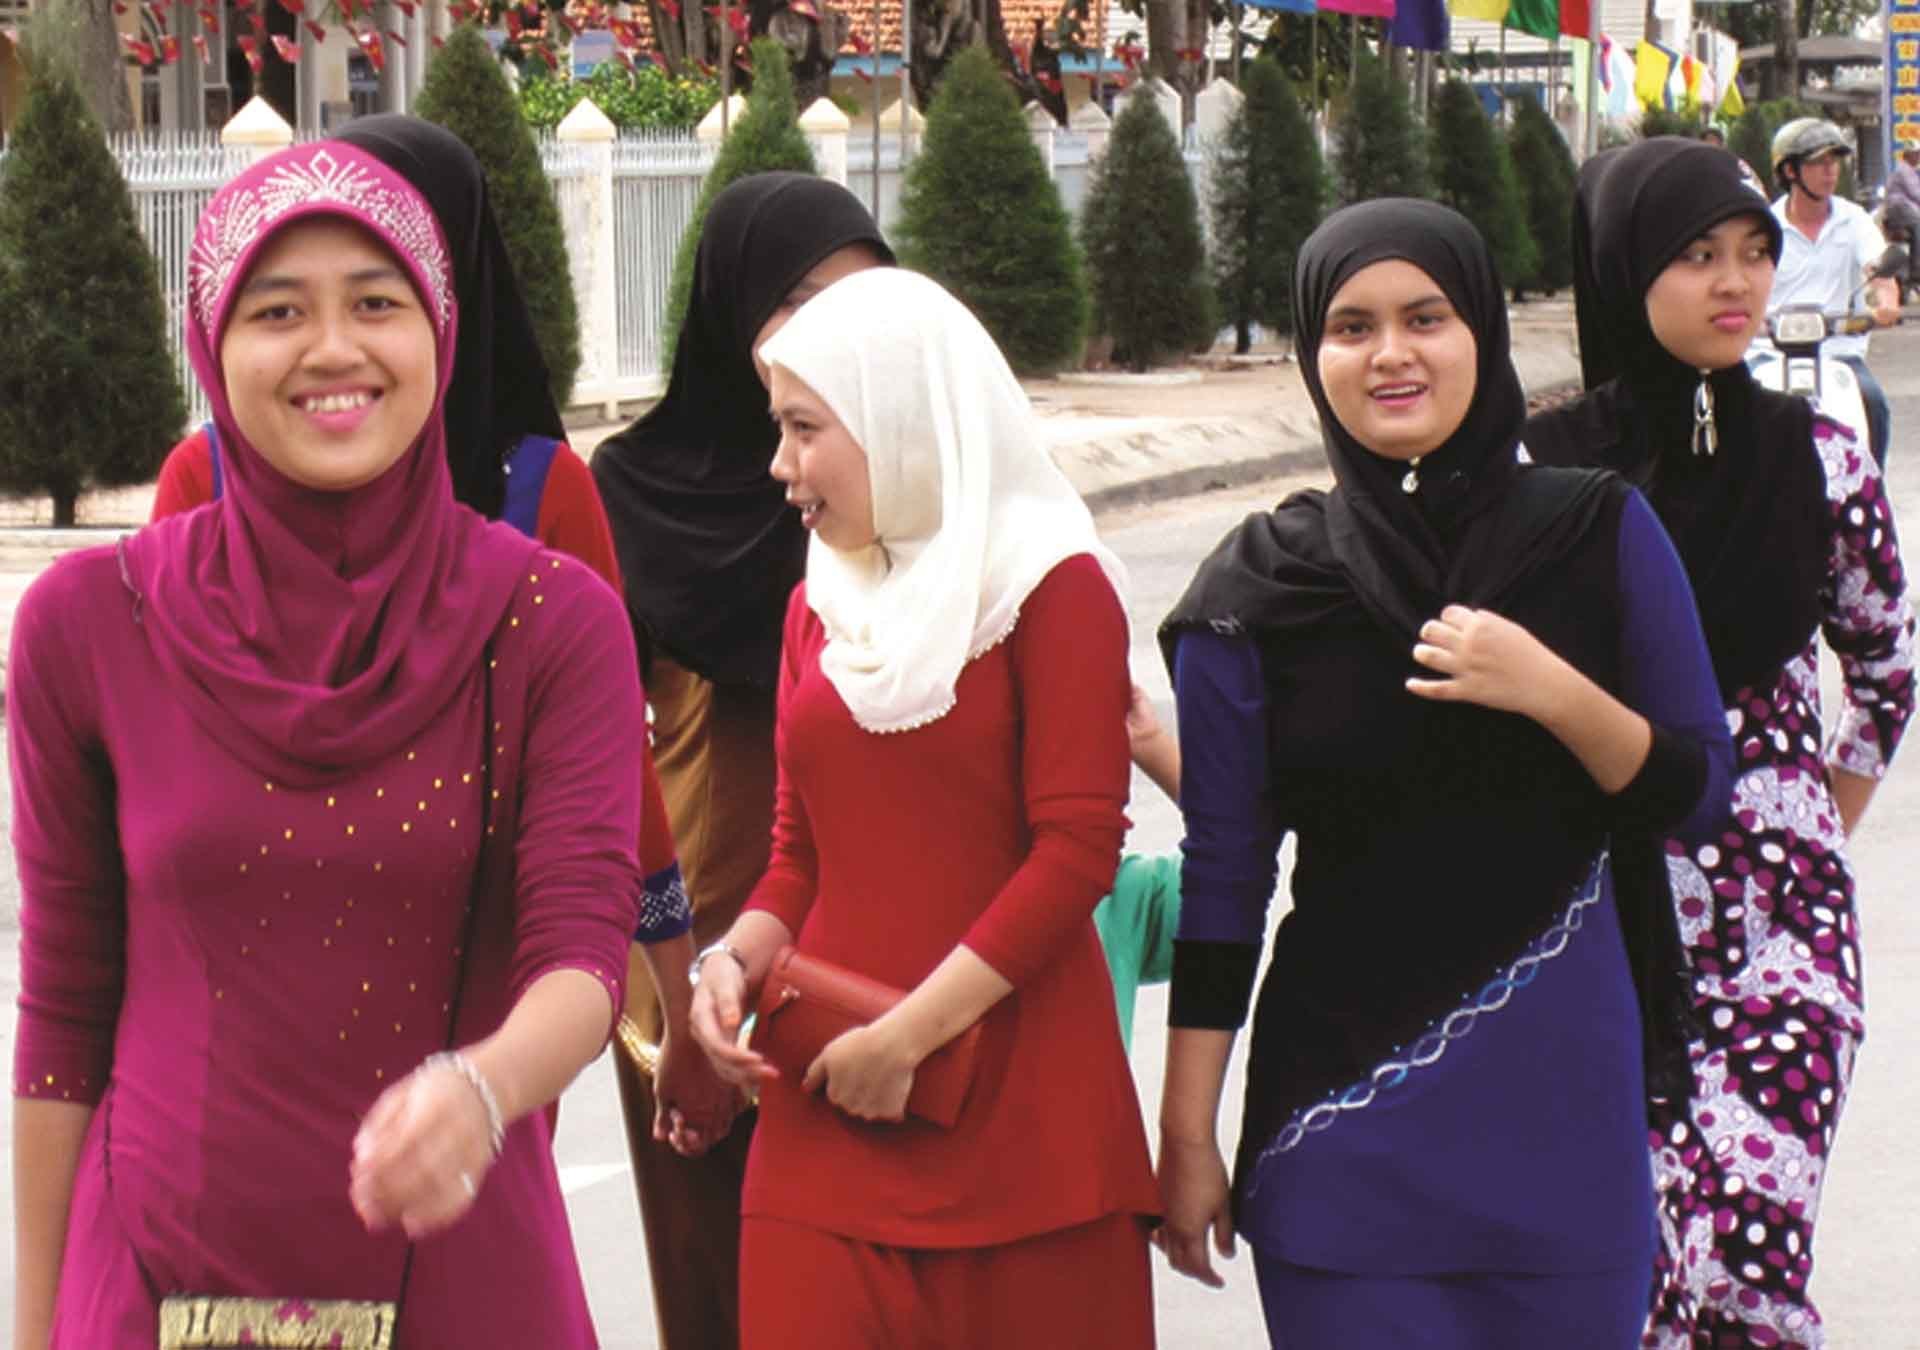 Mừng đón Tết Roya Haji các cô gái Chăm với chiếc khăn chùm đầu sặc sỡ và duyên dáng lạ lùng, cùng trang phục truyền thống, tạo thêm nét huyền bí trong từng cử chỉ của họ. (Ảnh: Phương Nghi)